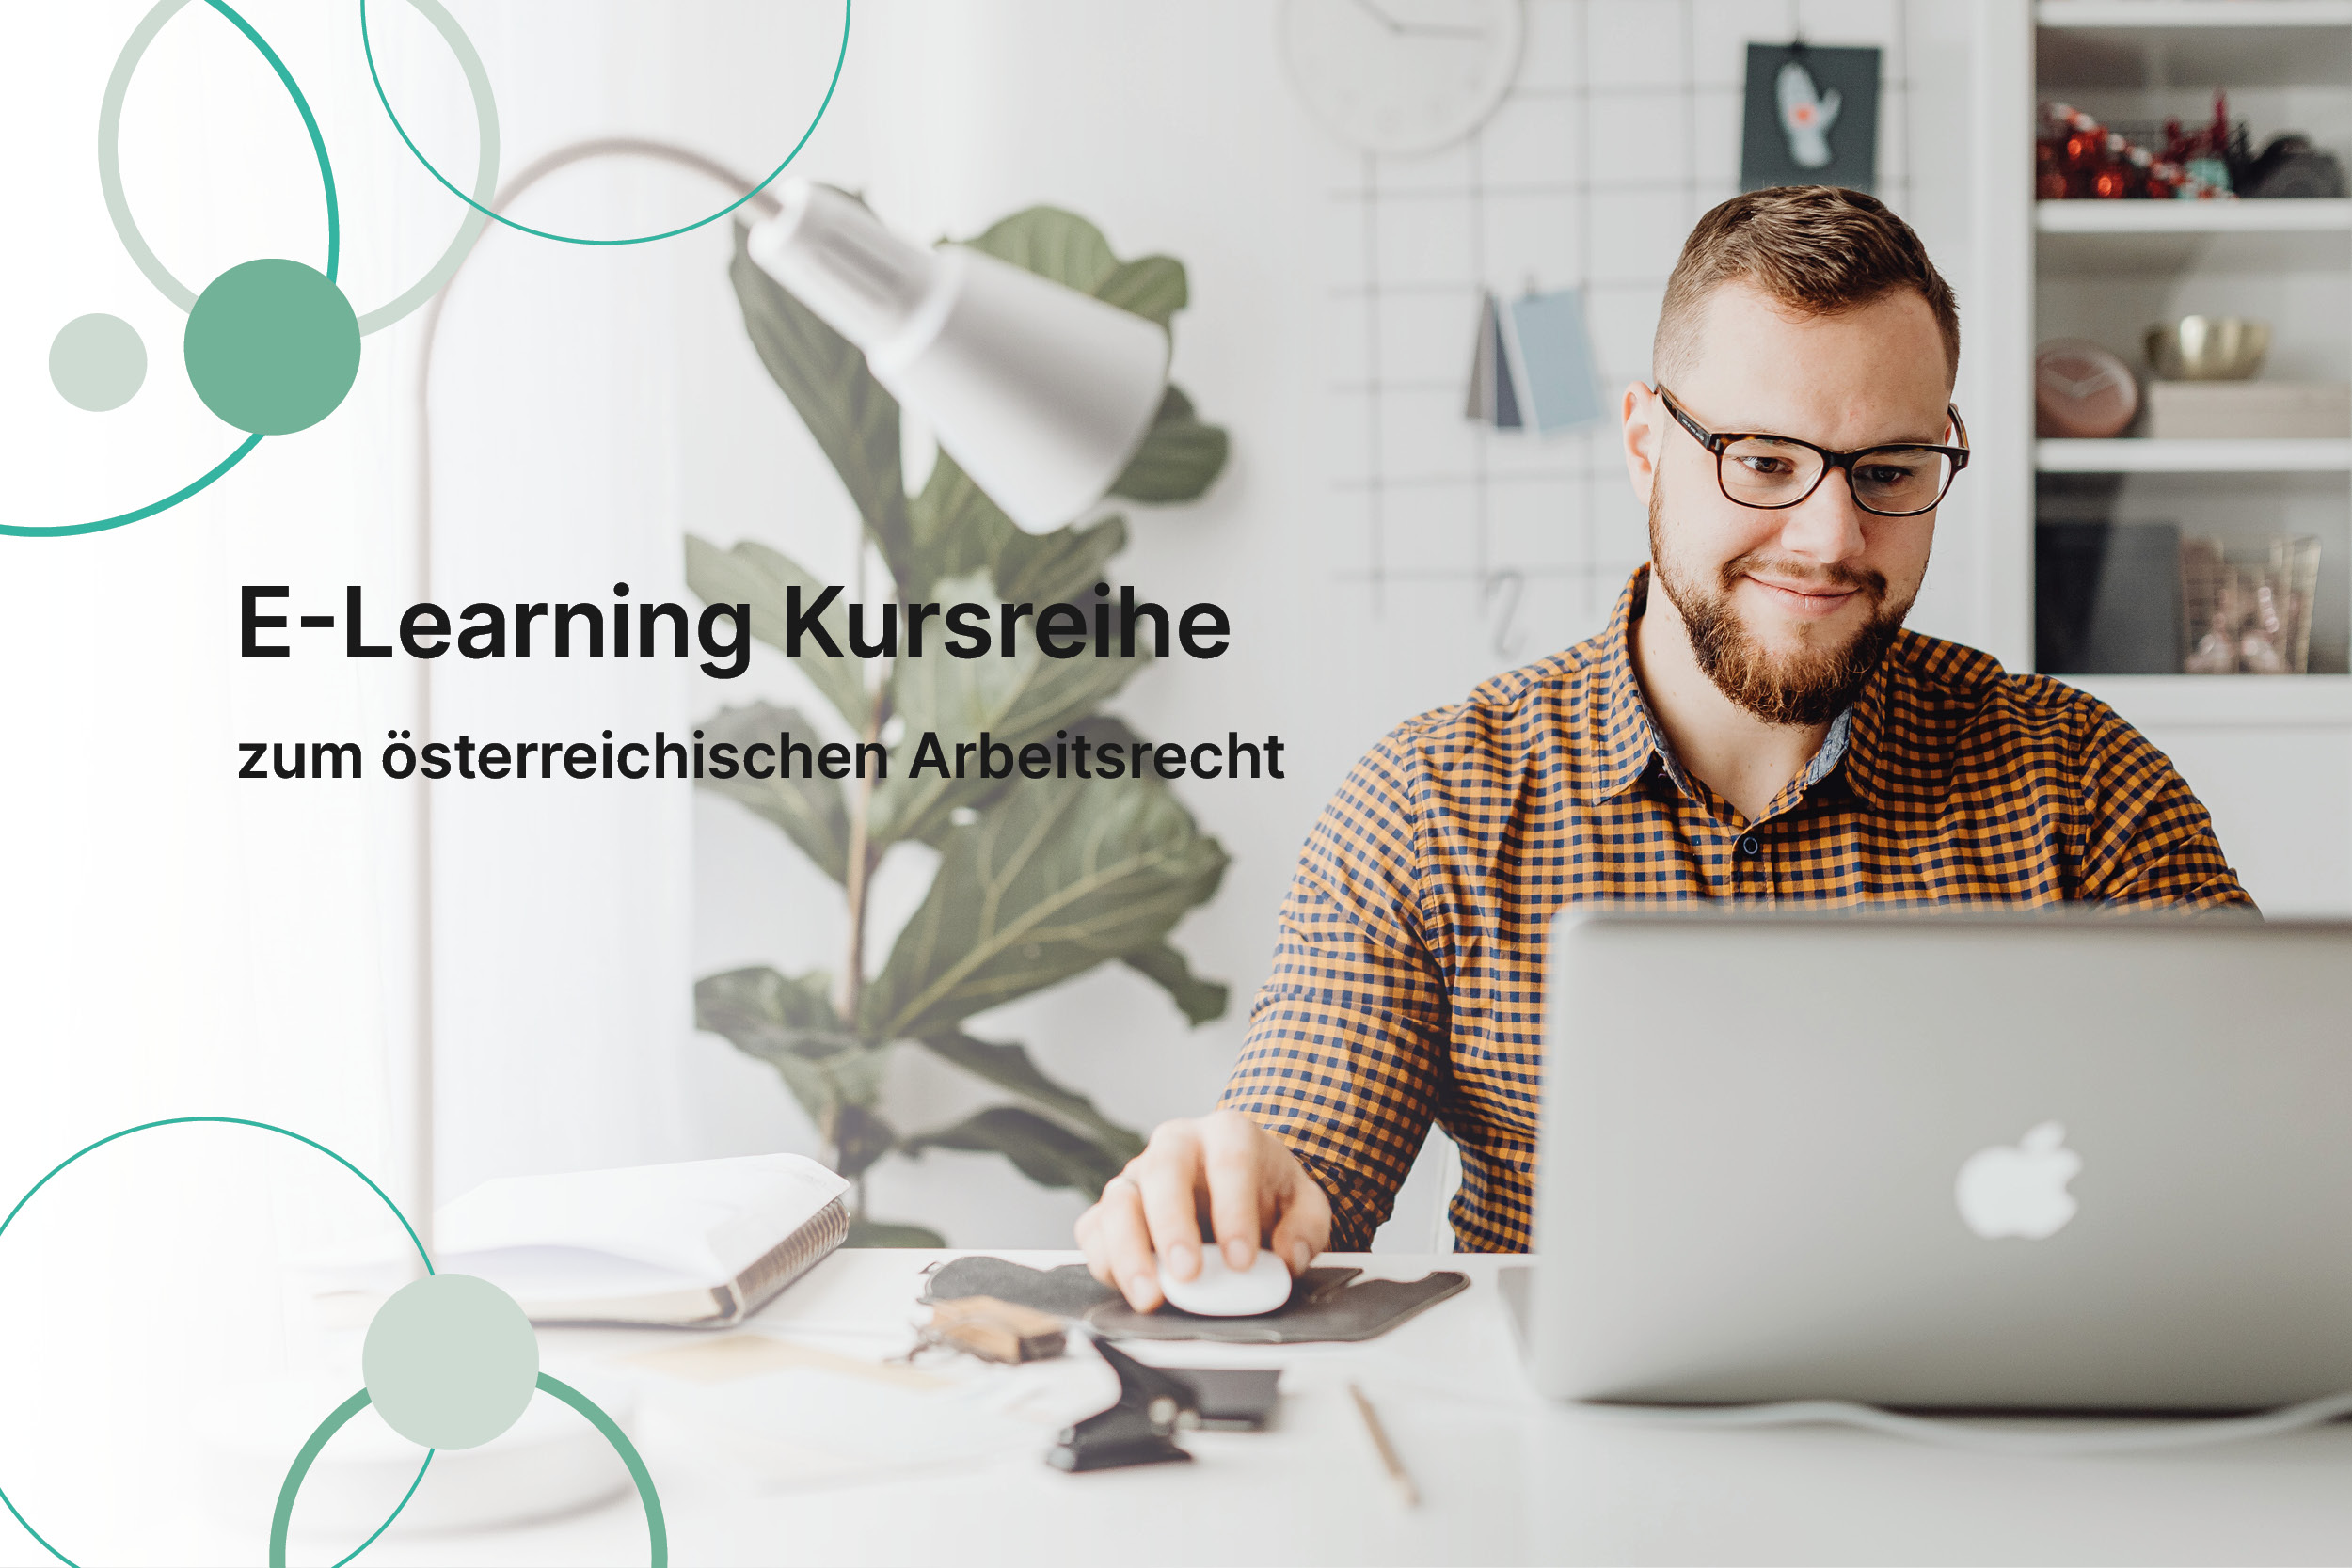 Neuer Newsbeitrag "E-Learning-Module zum österreichischen Arbeitsrecht bieten umfassende Schulung"